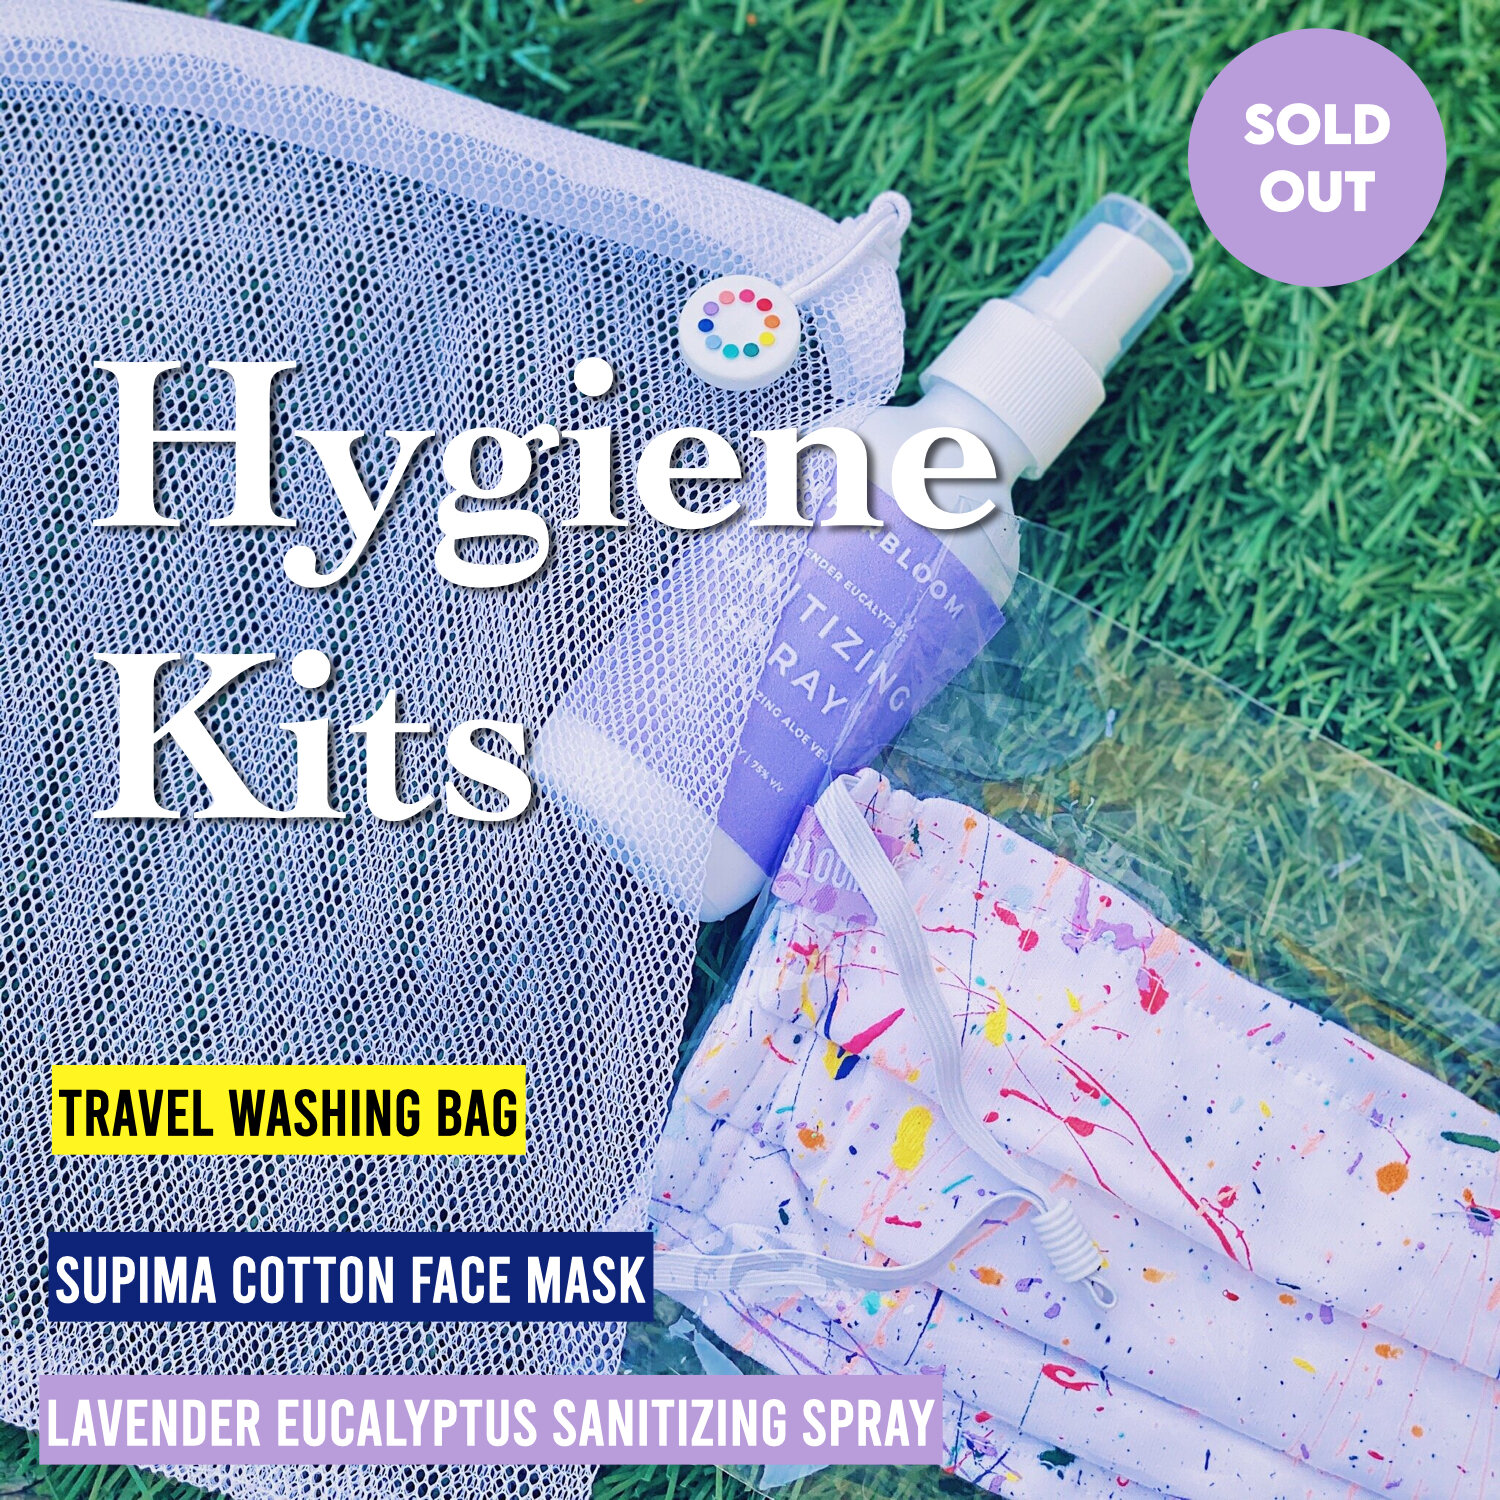 hygiene-kits-face-mask-superbloom-sanitizing-spray-washable.jpeg